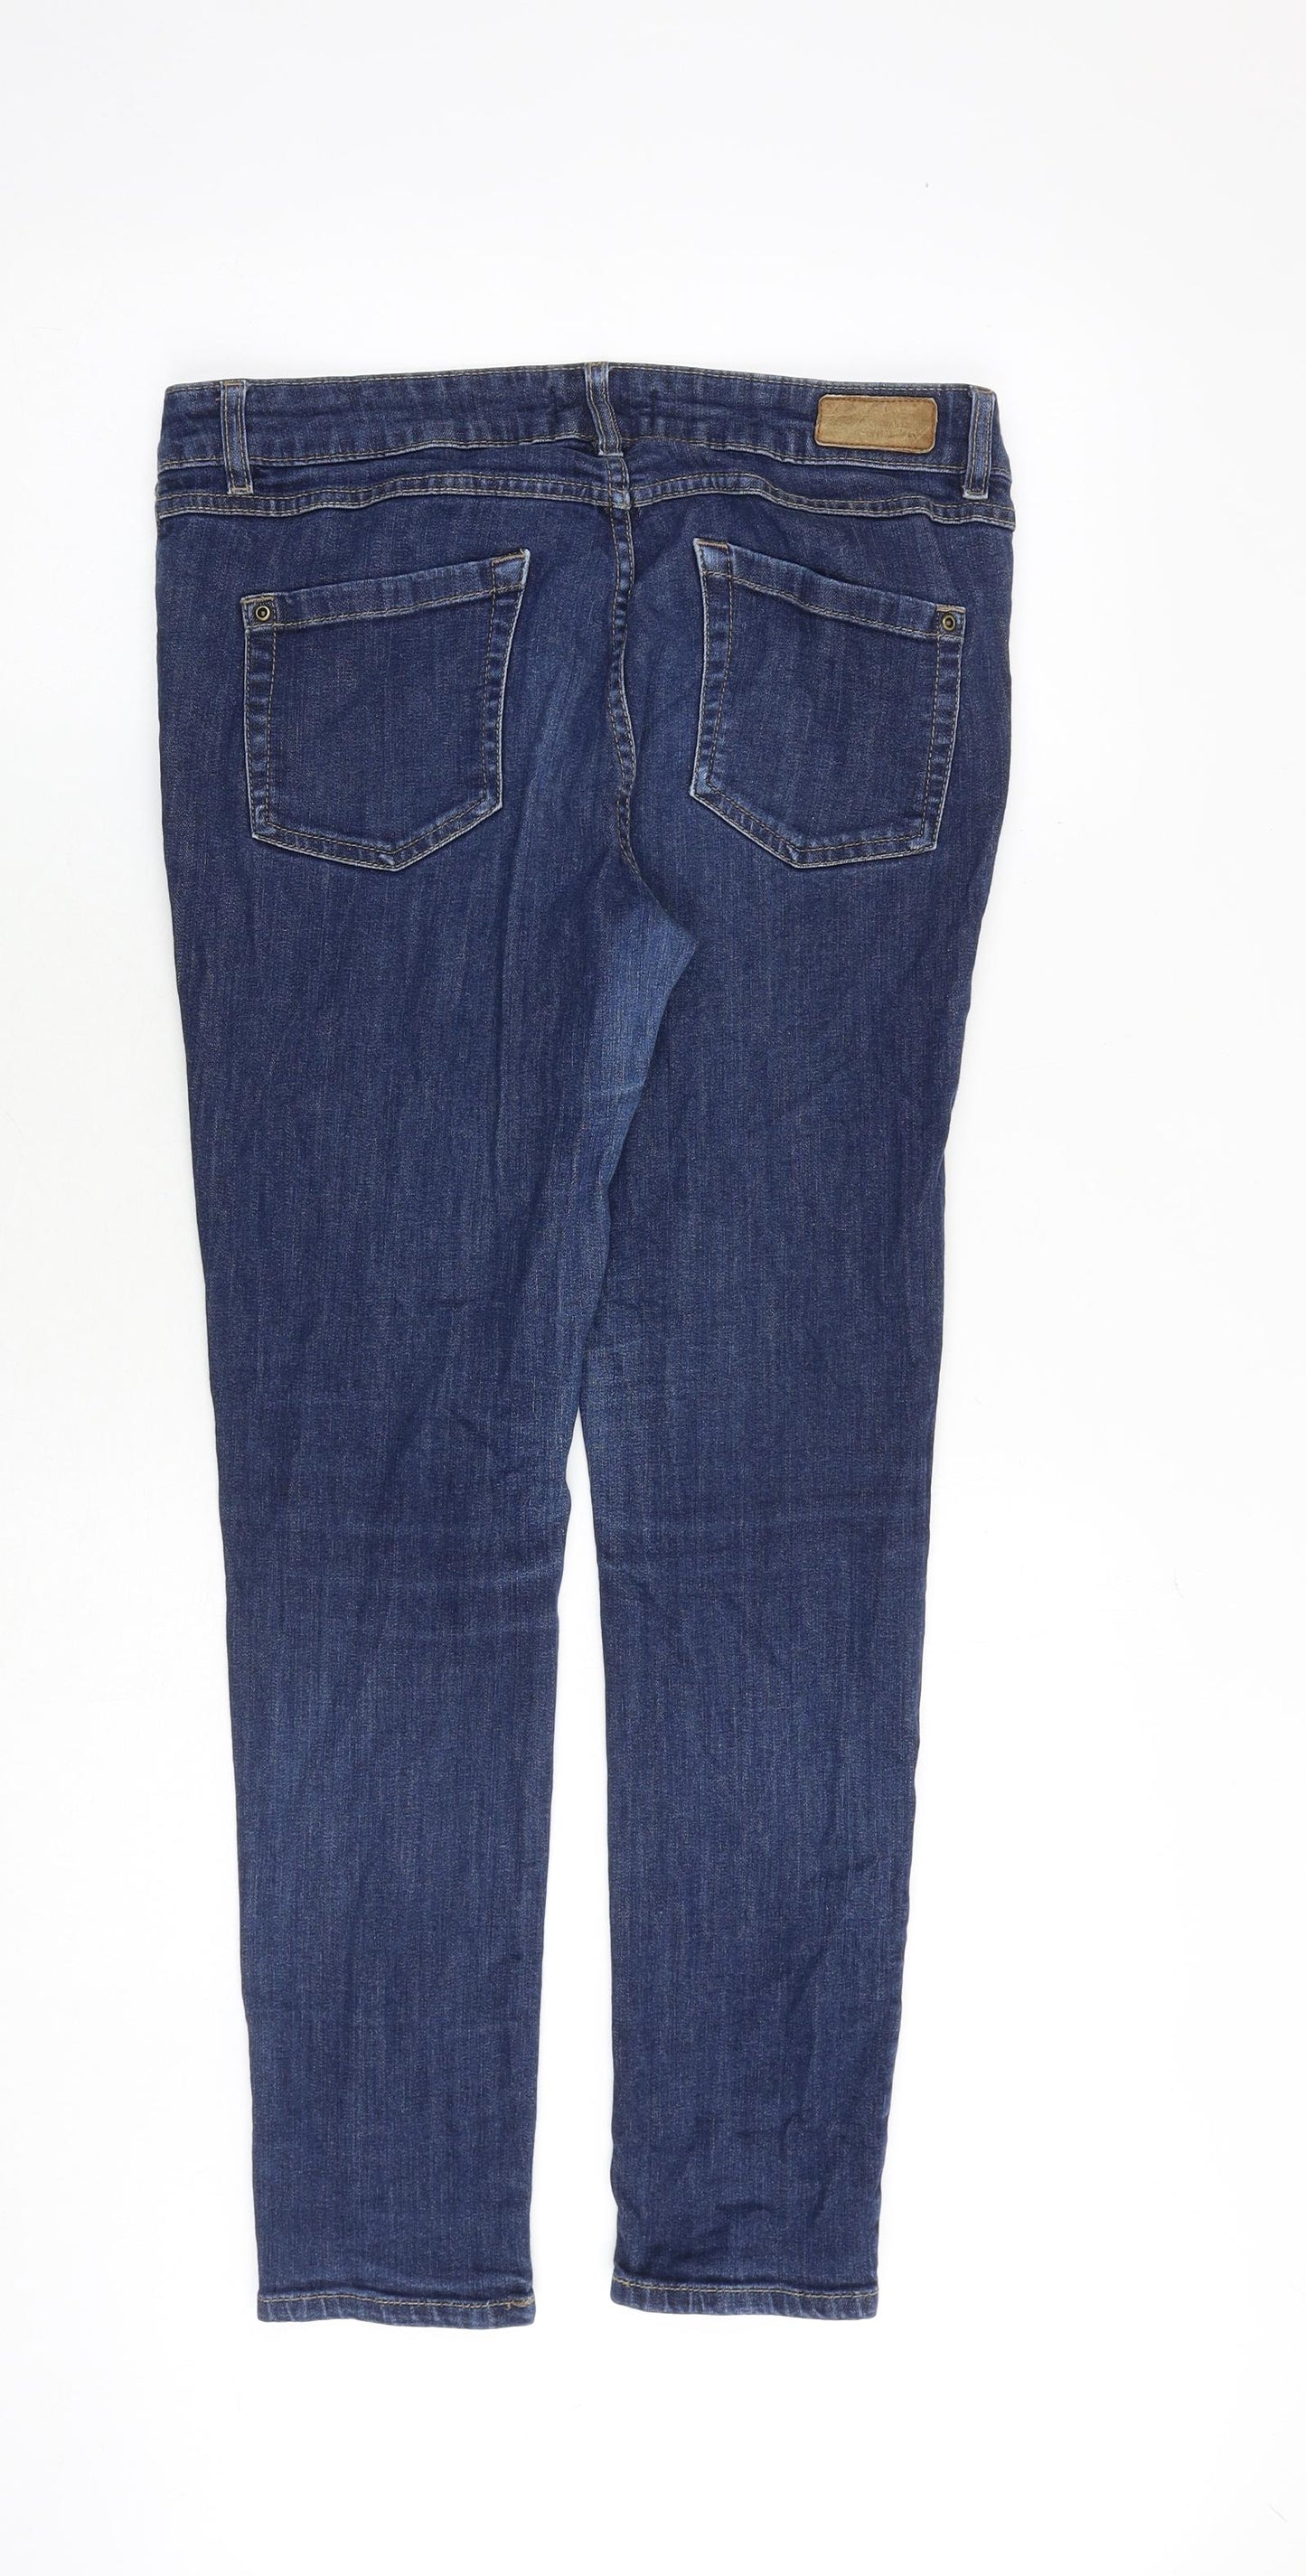 La Redoute Womens Blue Cotton Skinny Jeans Size 14 Regular Zip